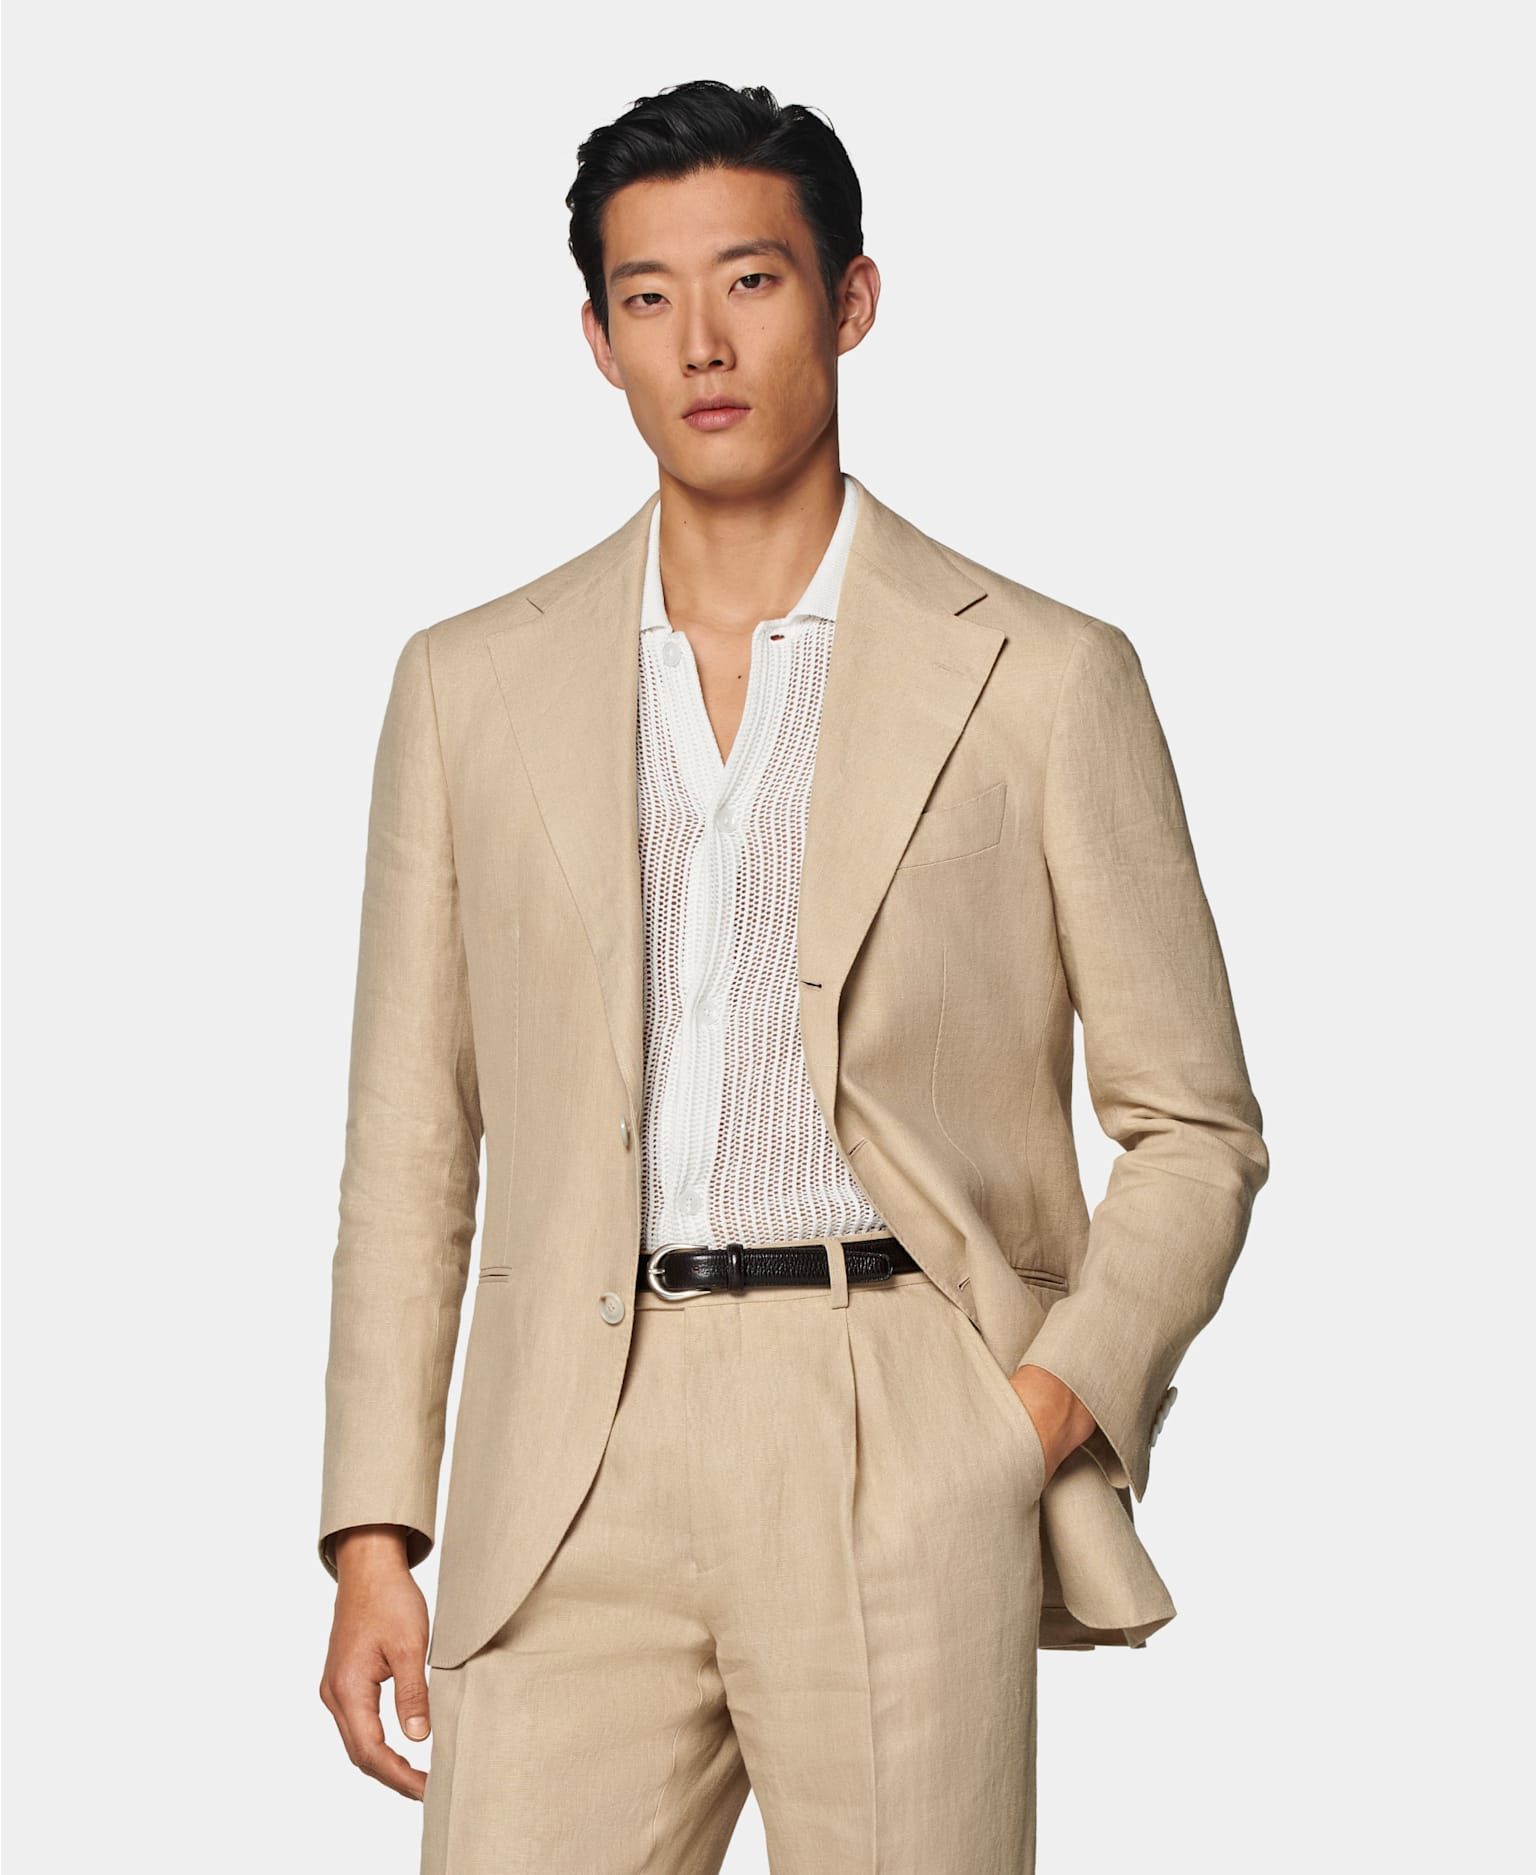 Sommerhochzeit-Outfit für Herren: Sandfarbener einreihiger Anzug mit Crochet Poloshirt in Off-White und schwarzem Gürtel.